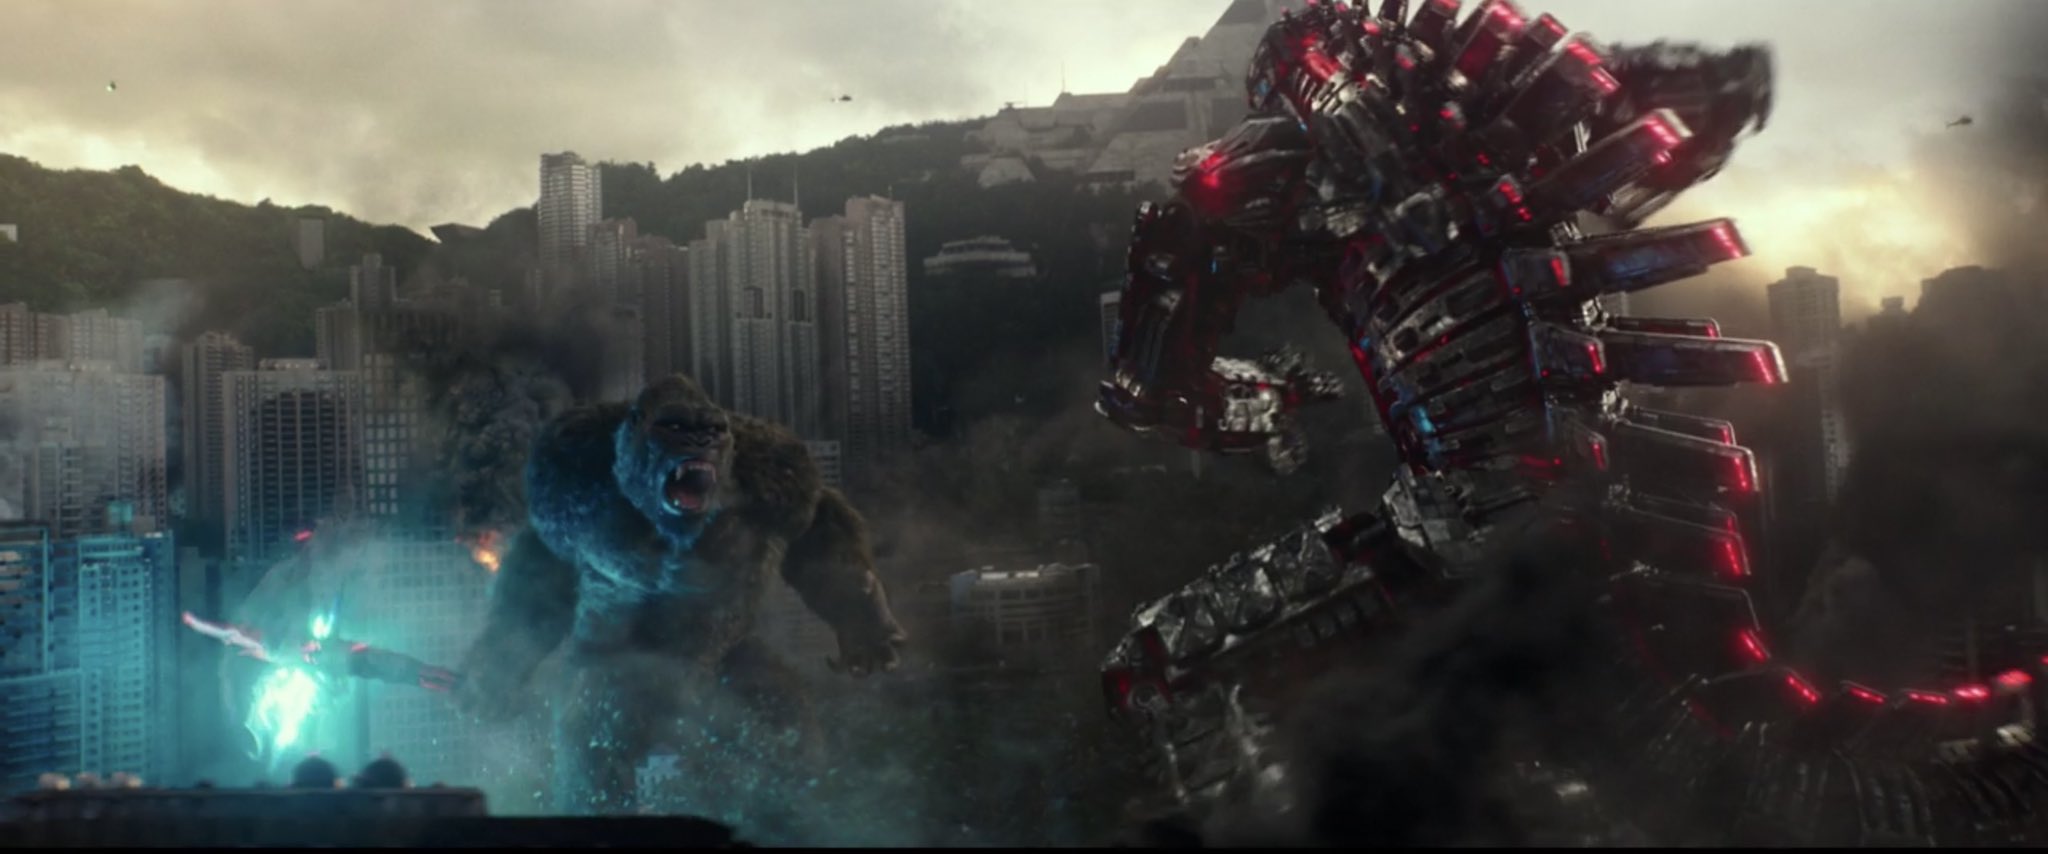 Kong vs. Mechagodzilla - A Godzilla vs. Kong (2021) Movie Image. 